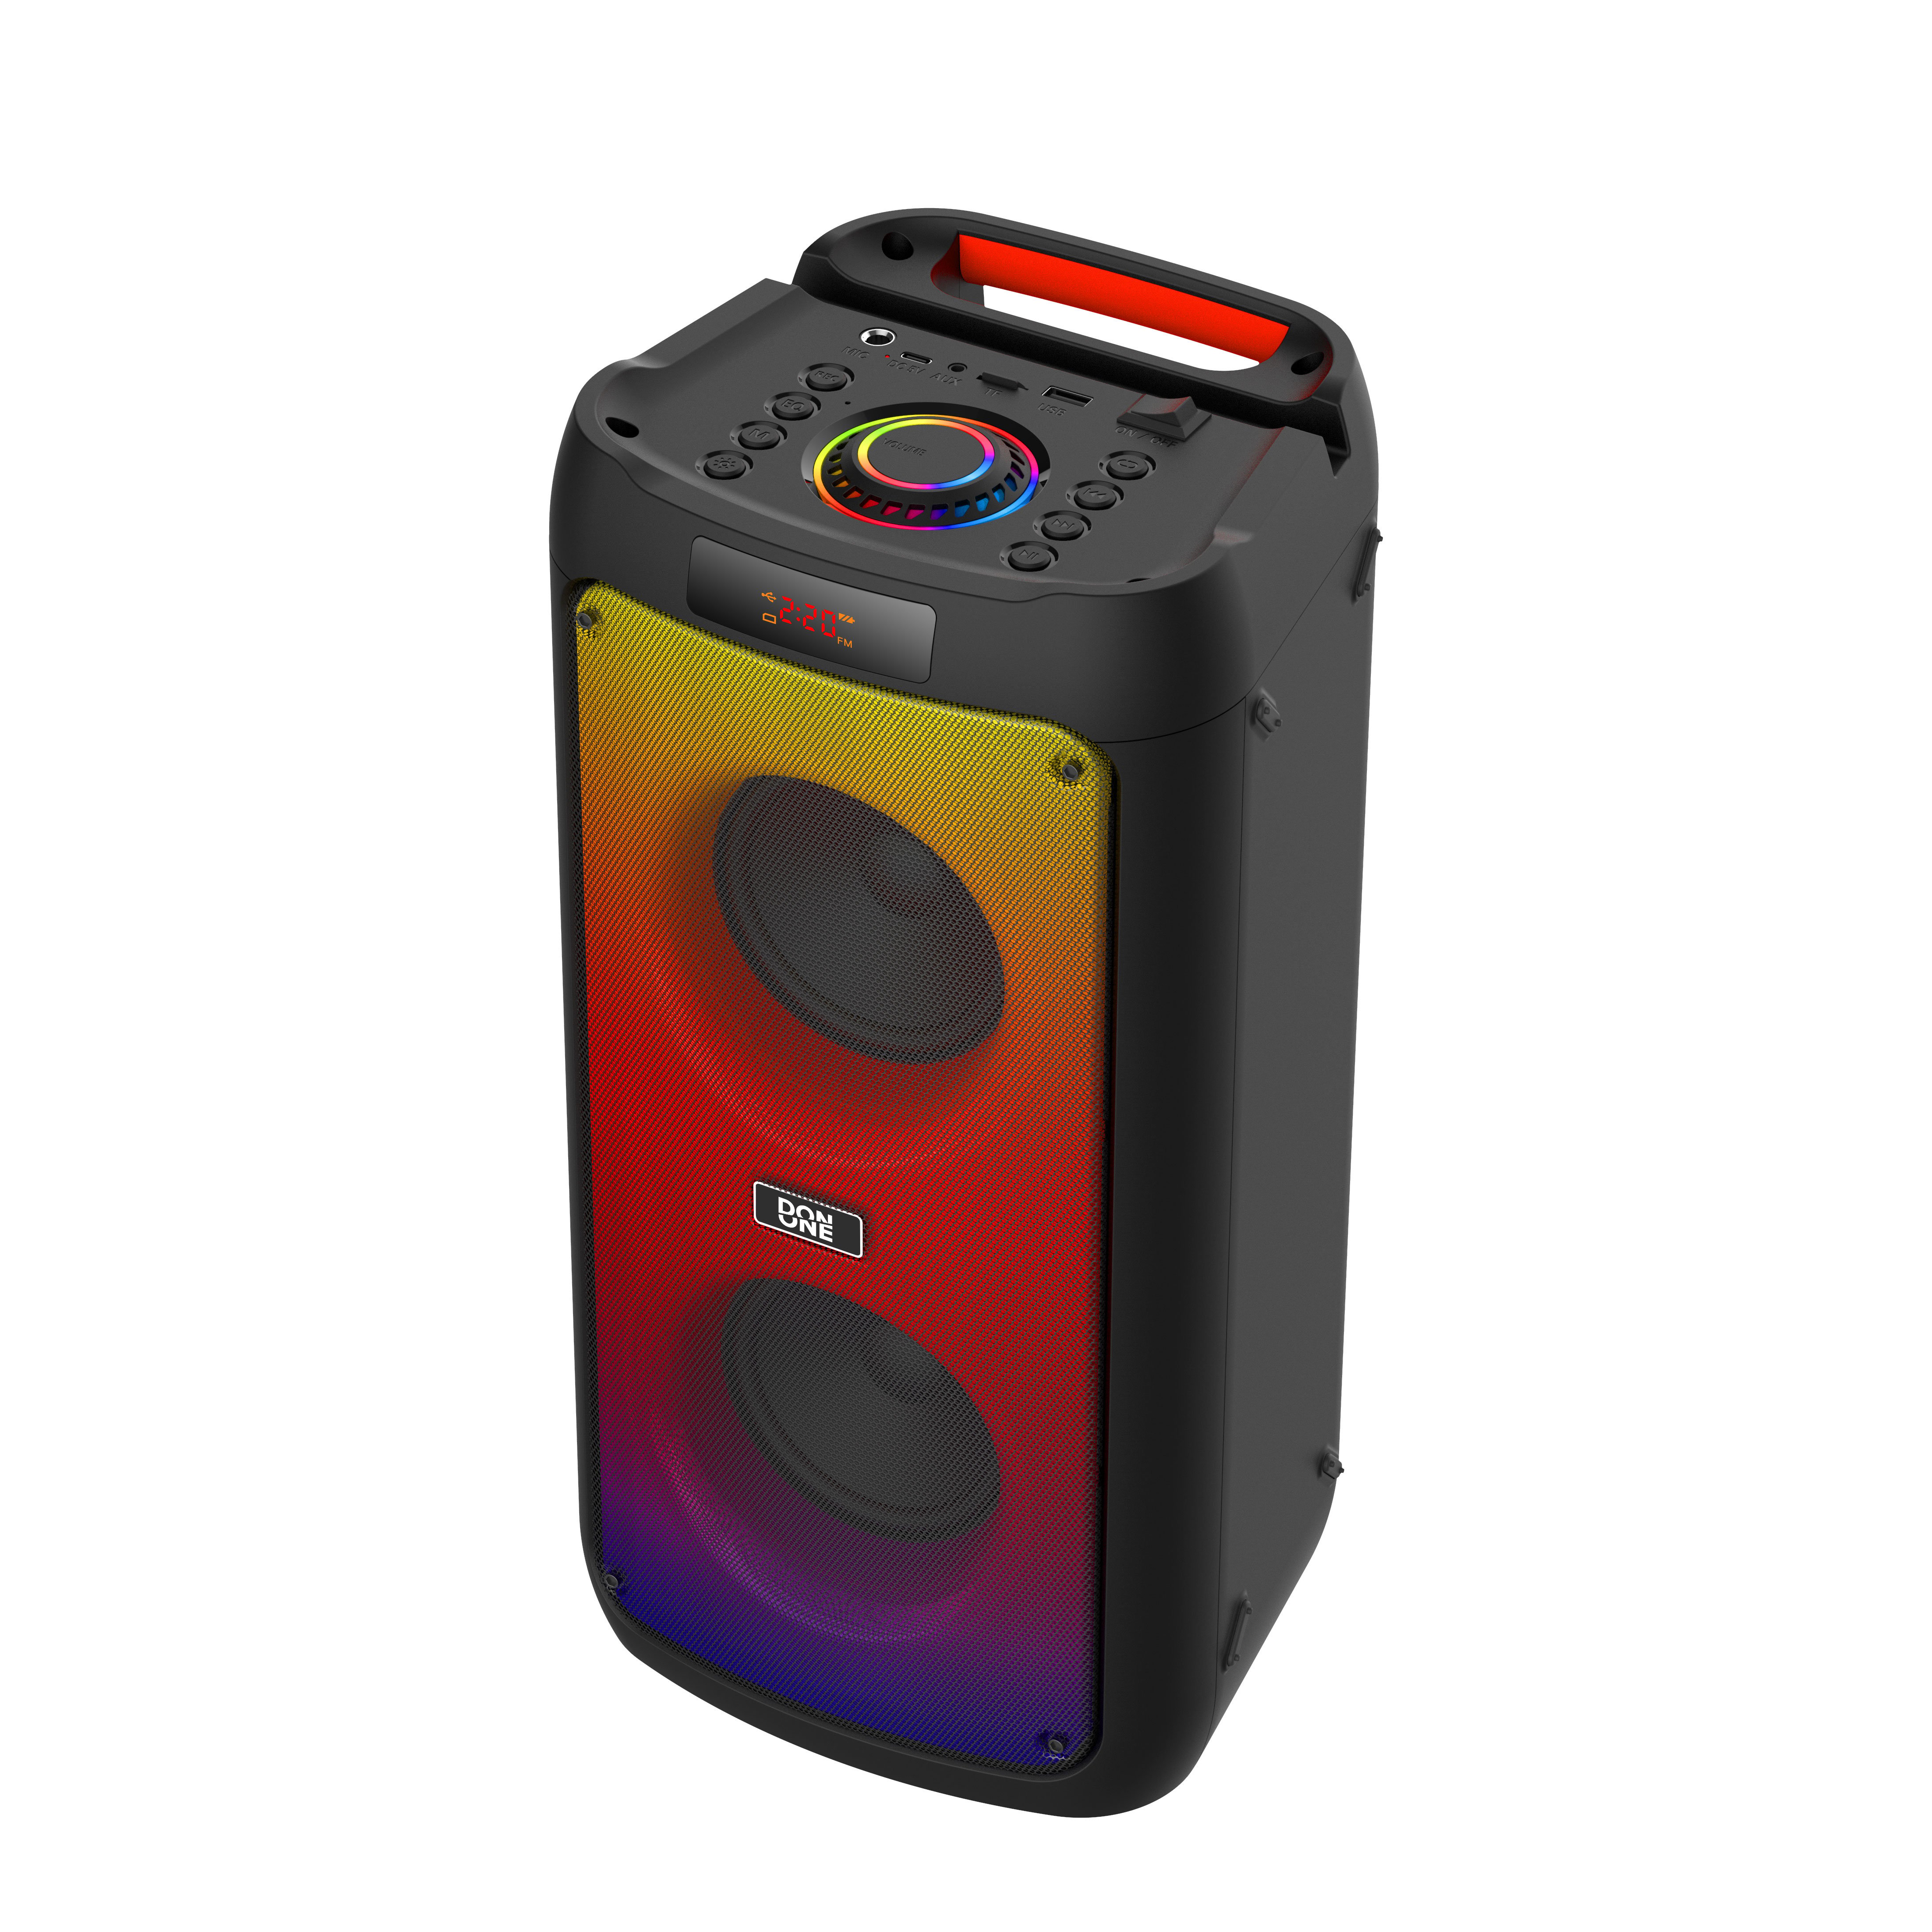 DON ONE - Party Speaker PS400 - Bluetooth festhøyttaler med LED RGB lys - Elektronikk